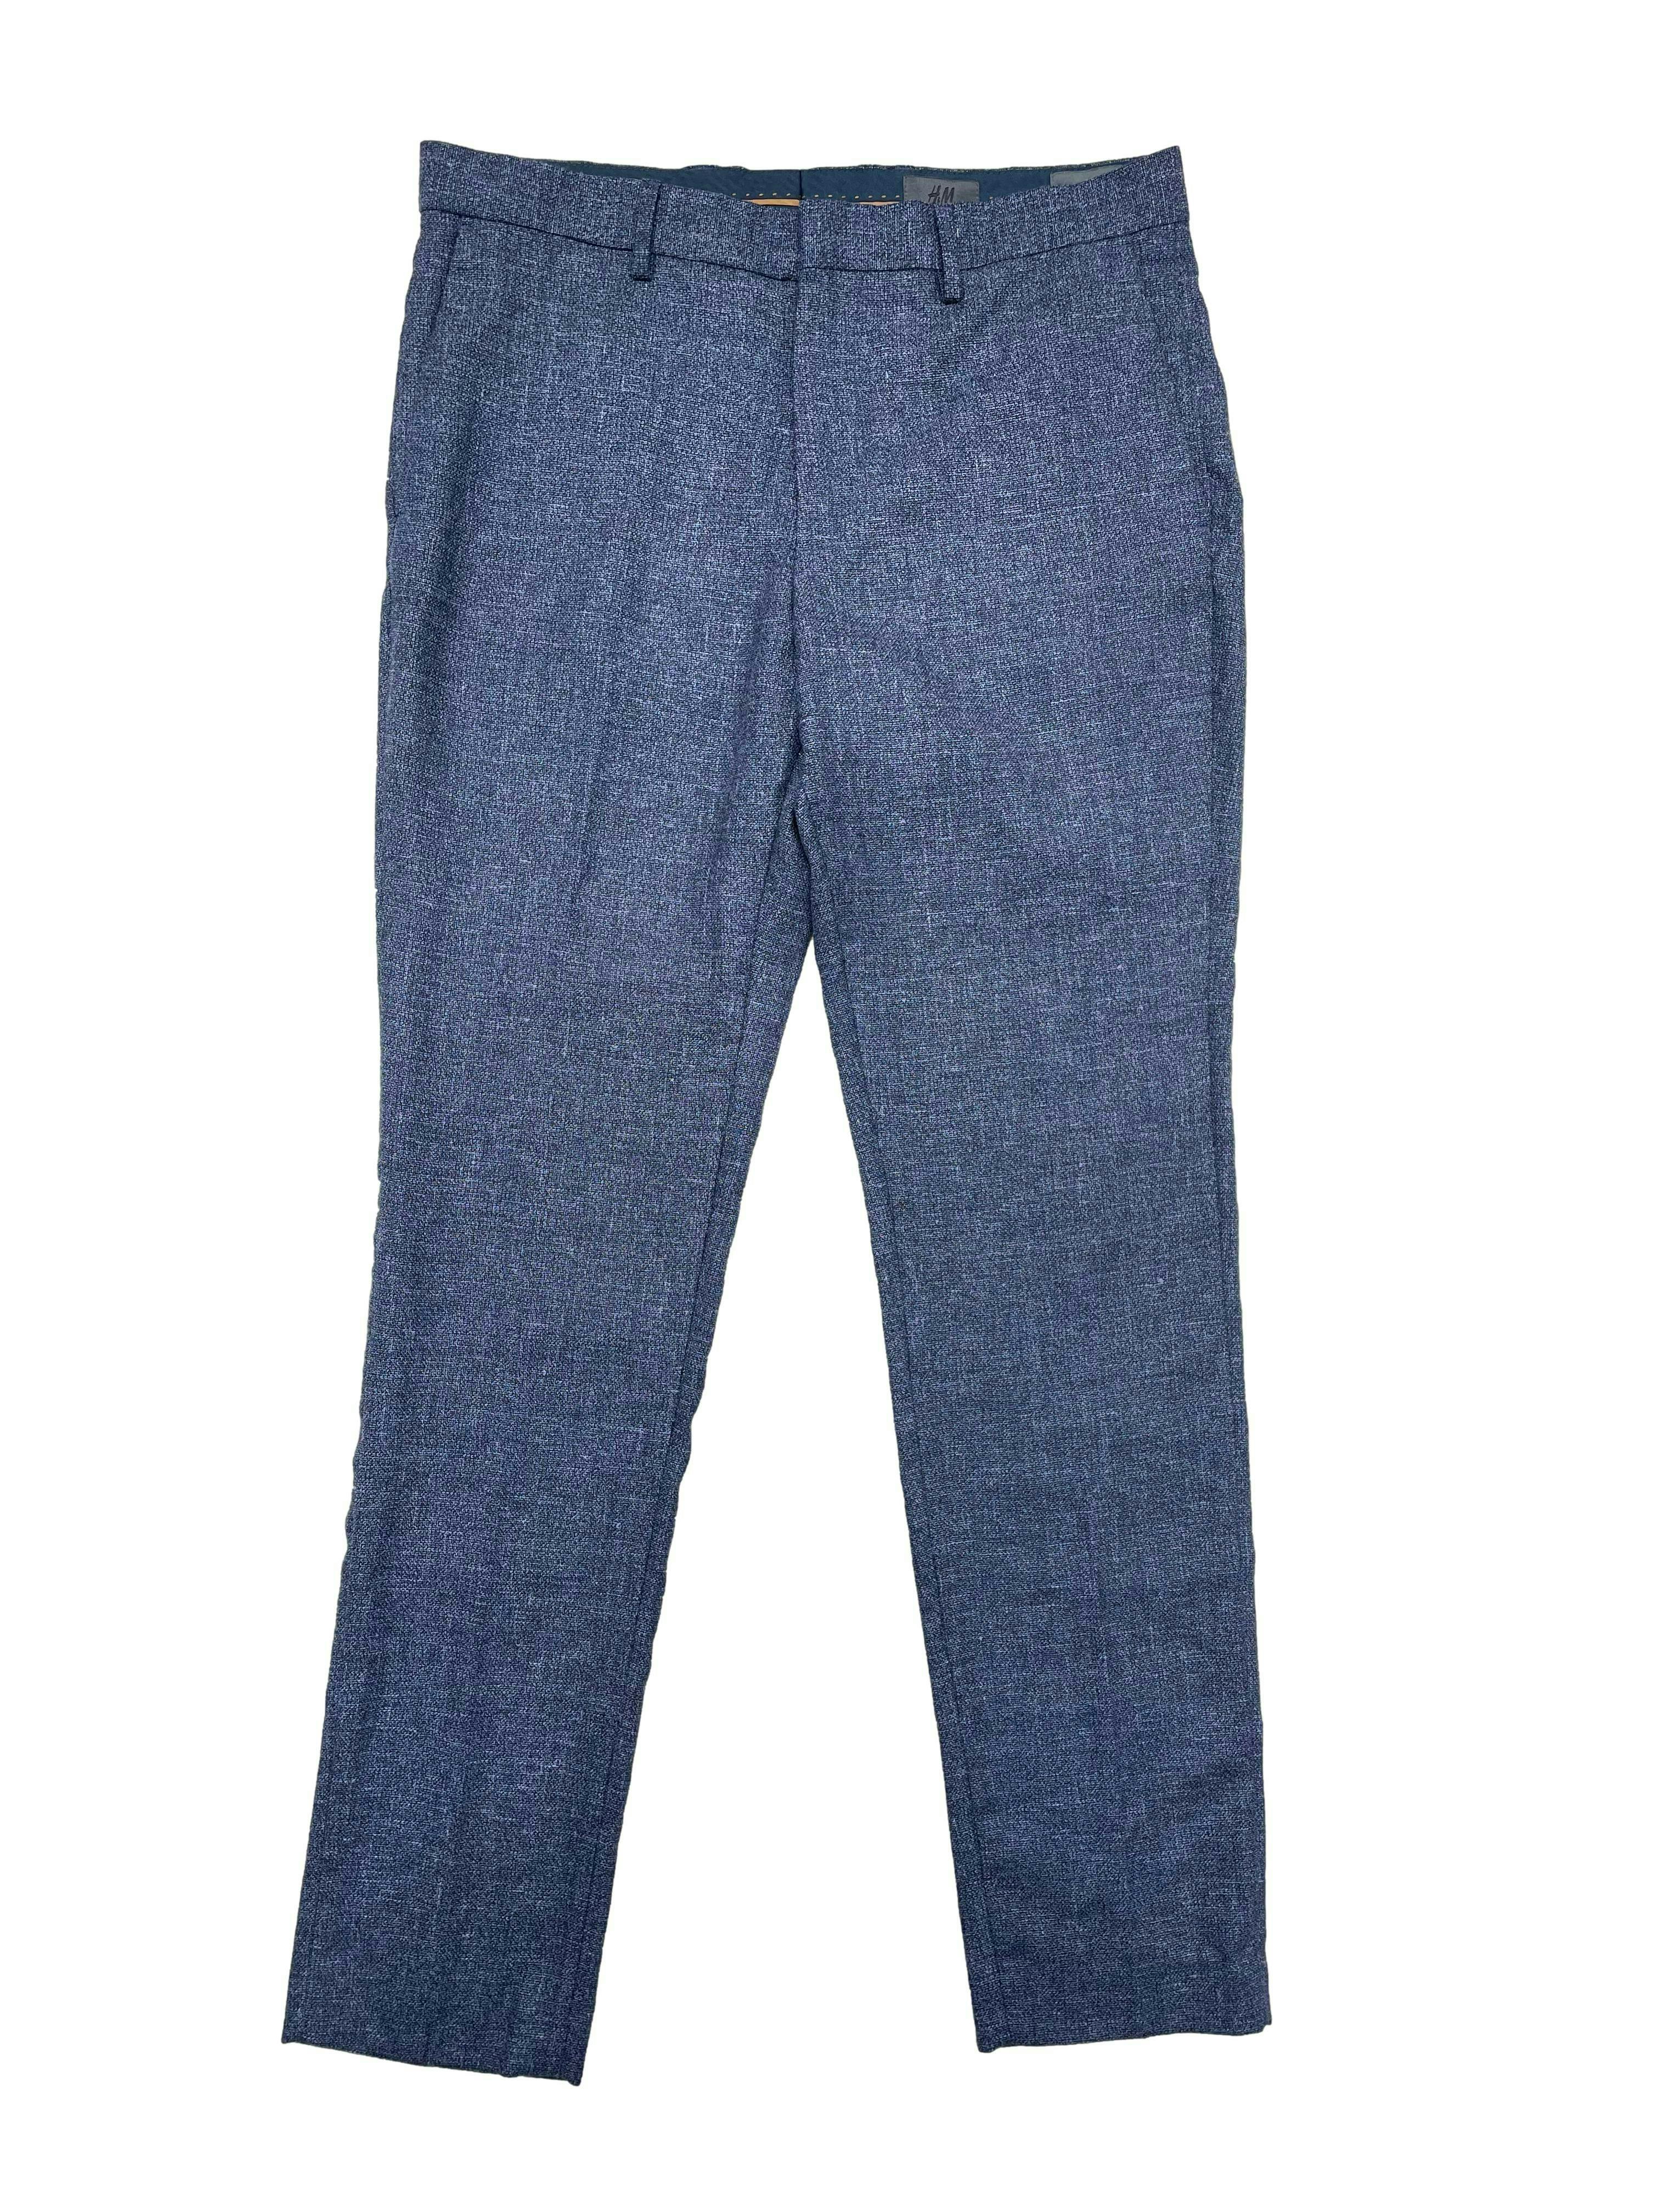 Pantalón slim H&M azul jaspeado de tweed con mezcla de lana y lino, tiene cuatro bolsillos. Cintura 86cm, Largo 105cm.